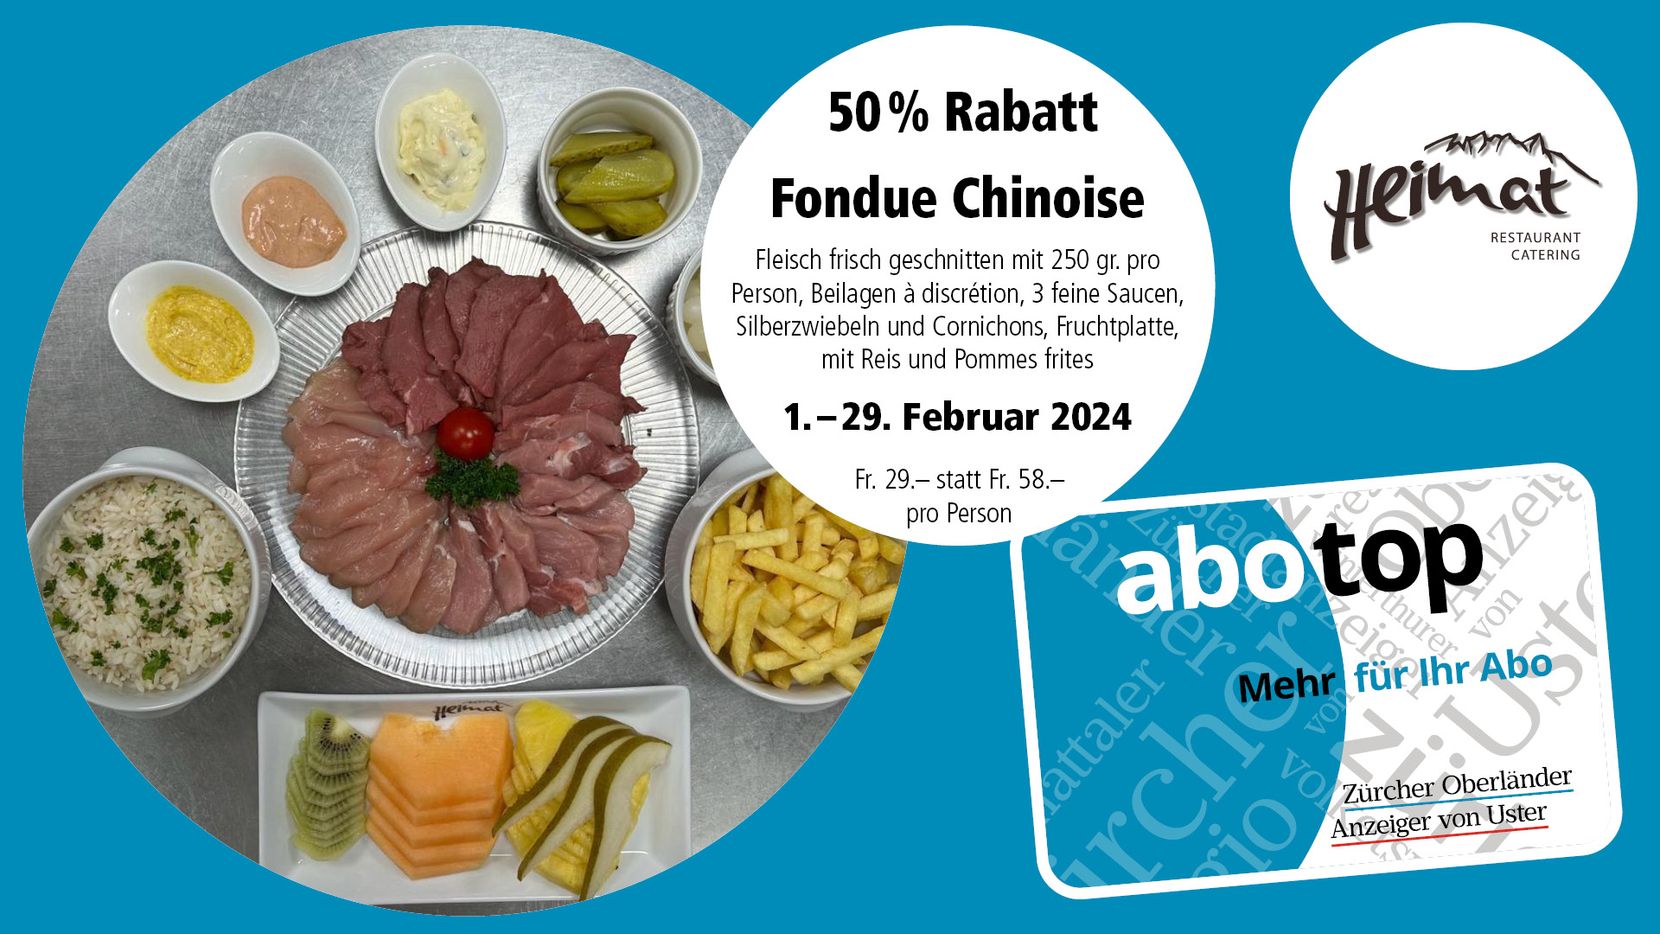 Abotop-Aktion Februar 2024 Restaurant und Catering Heimat